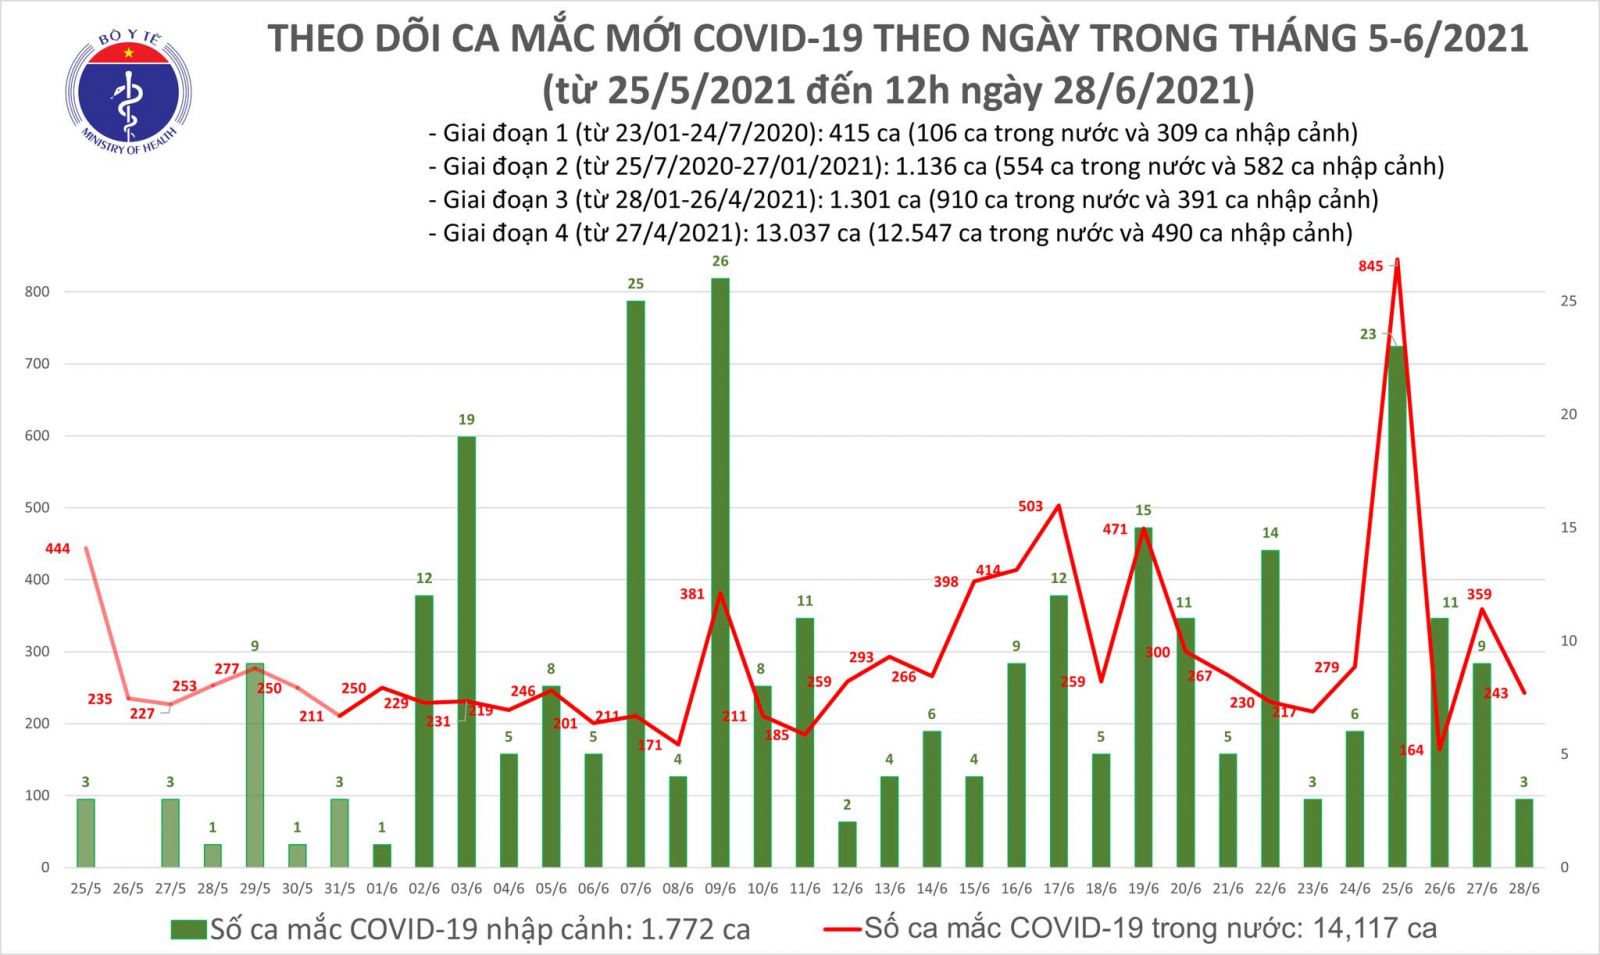 Trưa 28/6: Thêm 149 ca mắc COVID-19, TP Hồ Chí Minh tiếp tục nhiều nhất với 94 ca